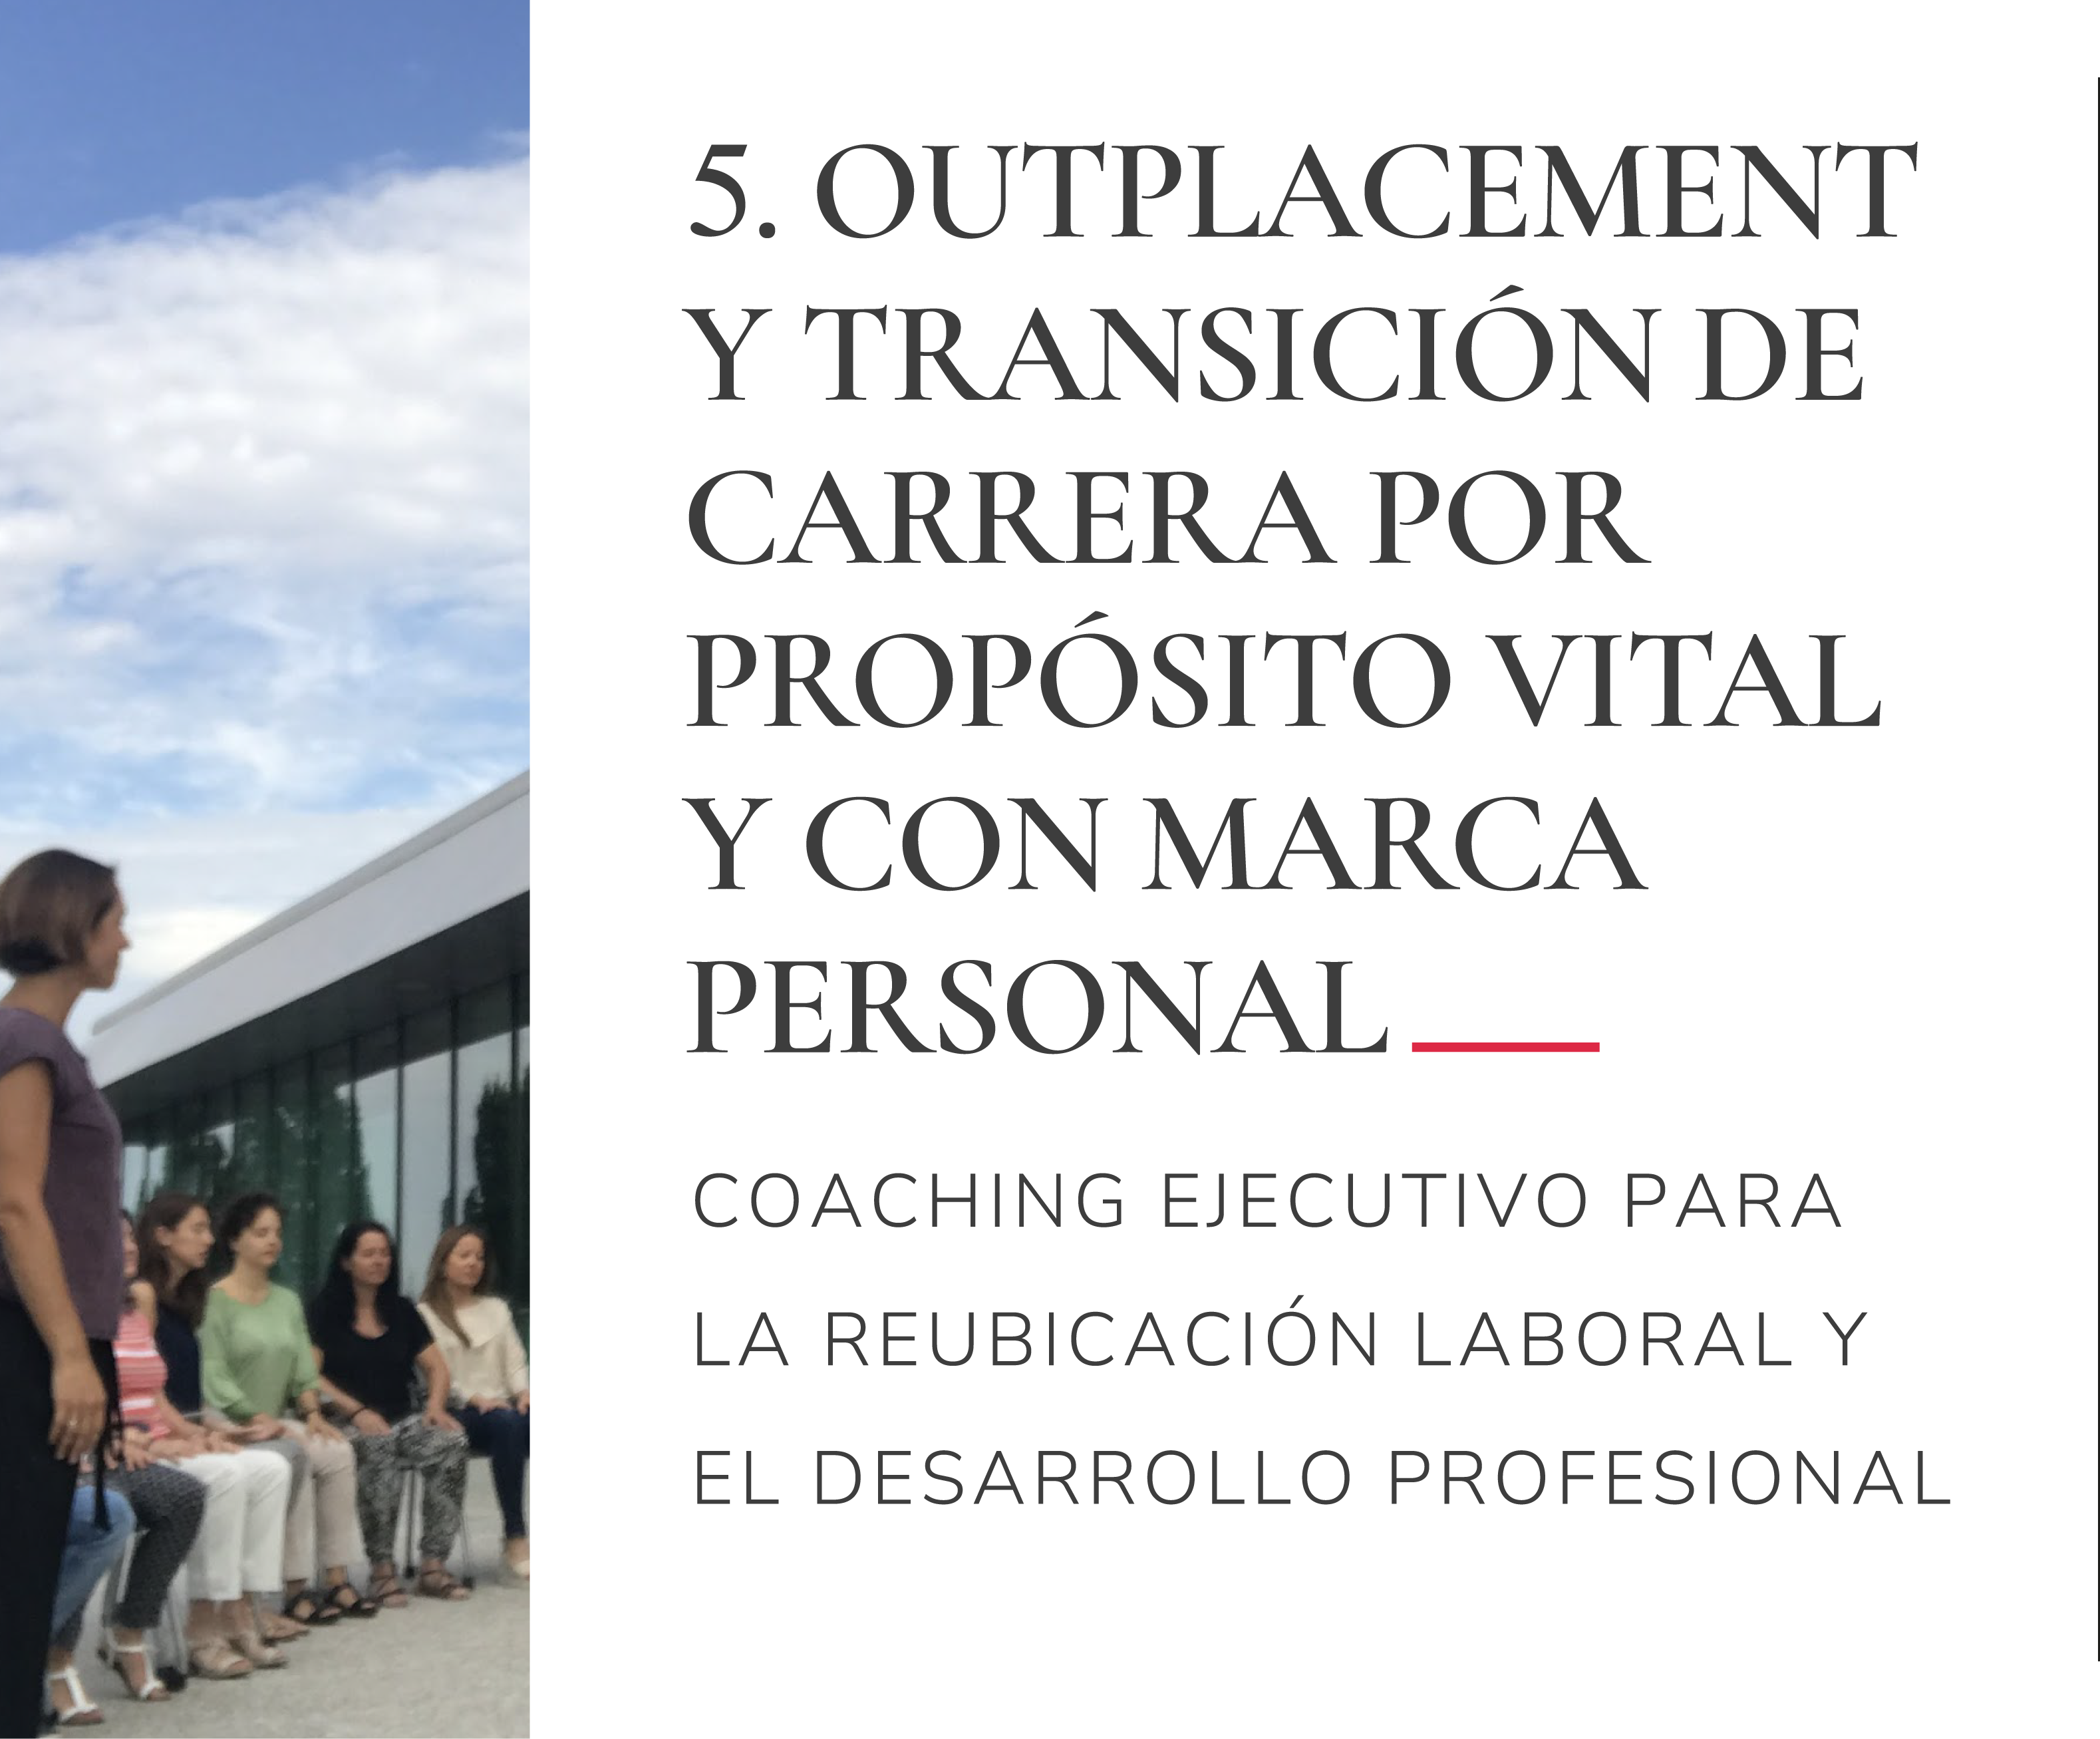 5. OUTPLACEMENT Y TRANSICIÓN DE CARRERA POR PROPÓSITO VITAL Y CON MARCA PERSONAL